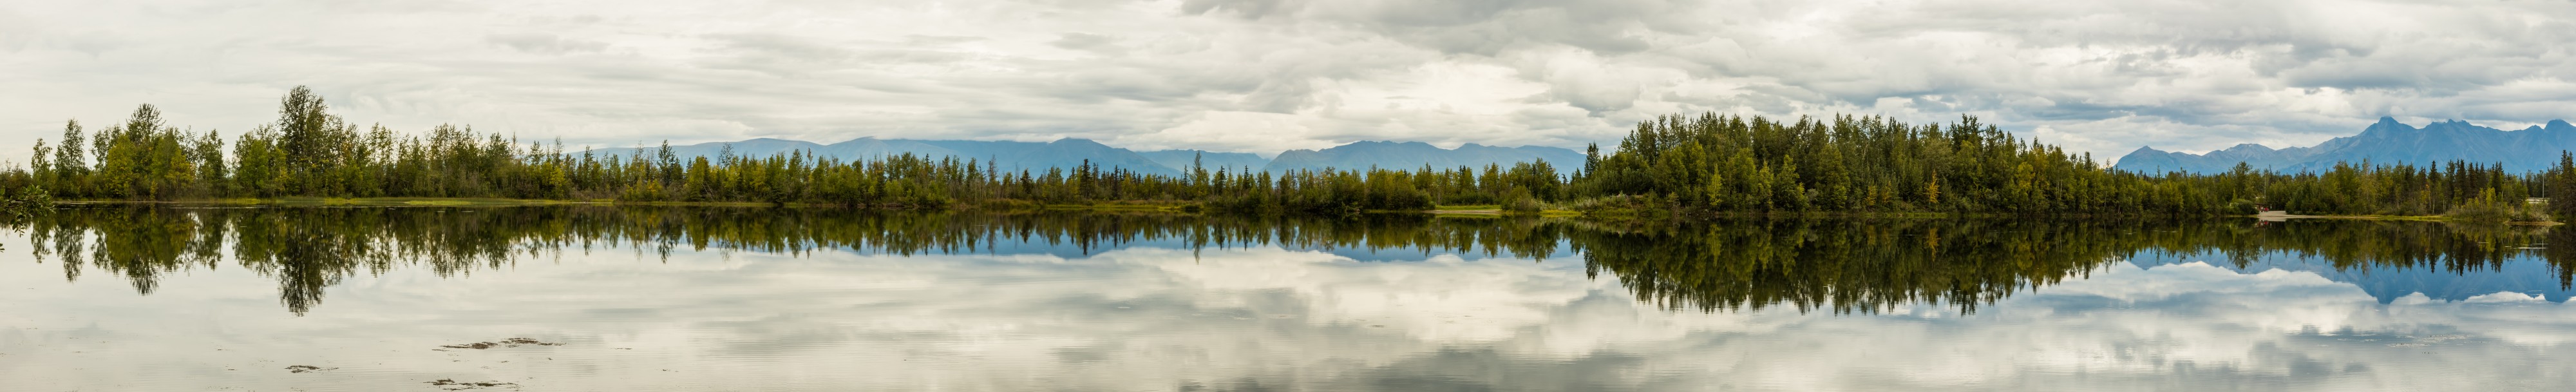 Lago de las Reflexiones, Palmer, Alaska, Estados Unidos, 2017-08-22, DD 12-19 PAN